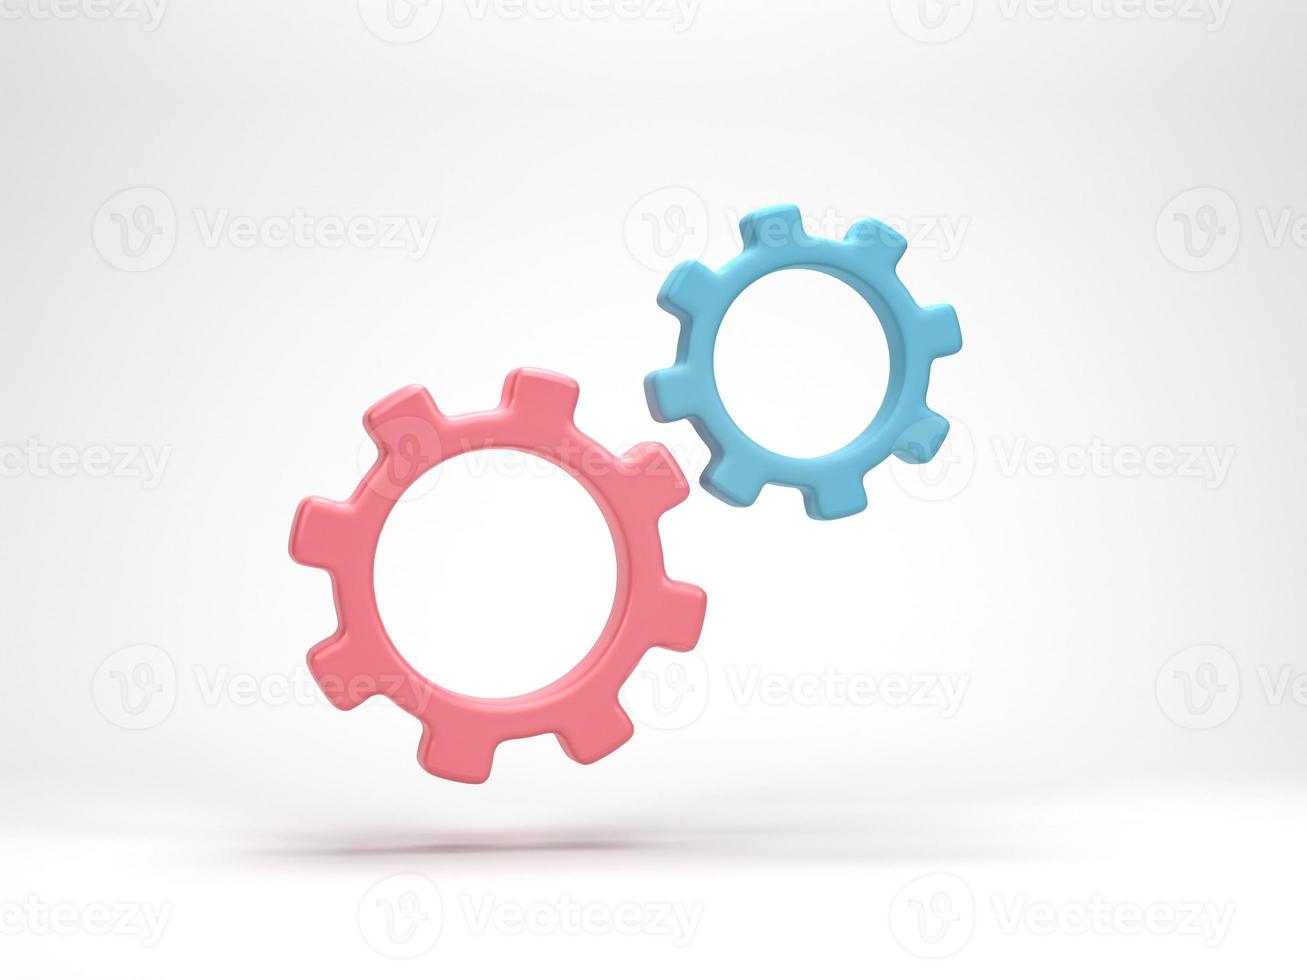 representación 3d, ilustración 3d. símbolo de engranaje mínimo aislado sobre fondo blanco. concepto de rueda dentada de icono simple de engranaje. foto